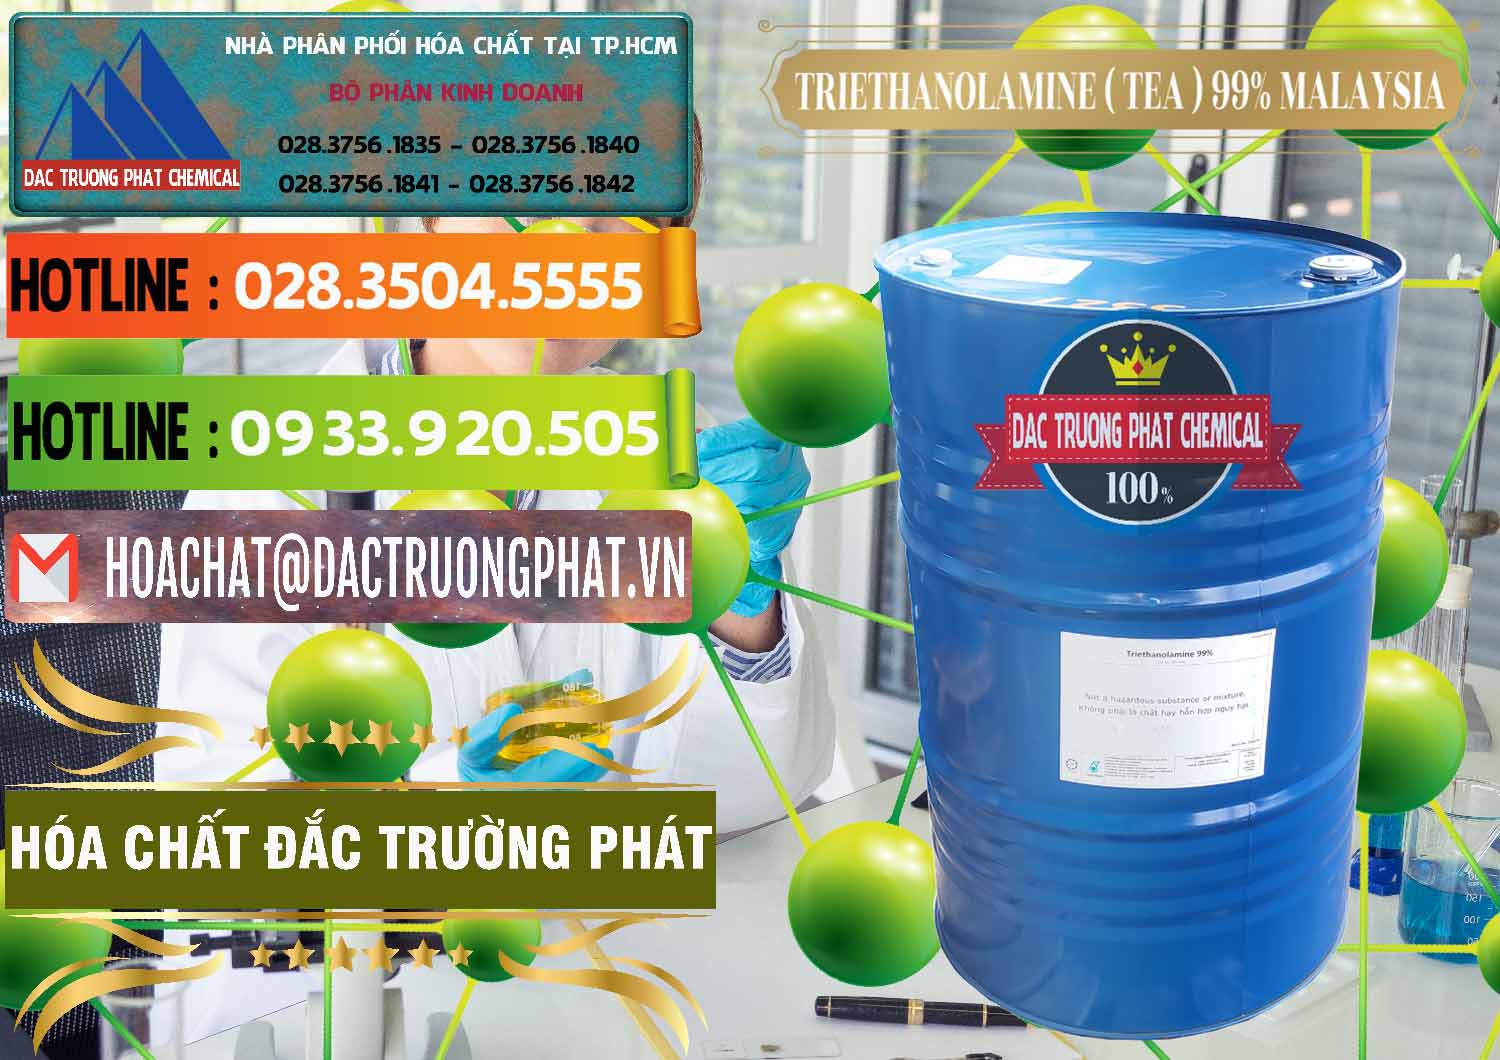 Công ty chuyên bán ( cung ứng ) TEA - Triethanolamine 99% Mã Lai Malaysia - 0323 - Chuyên cung ứng và phân phối hóa chất tại TP.HCM - cungcaphoachat.com.vn